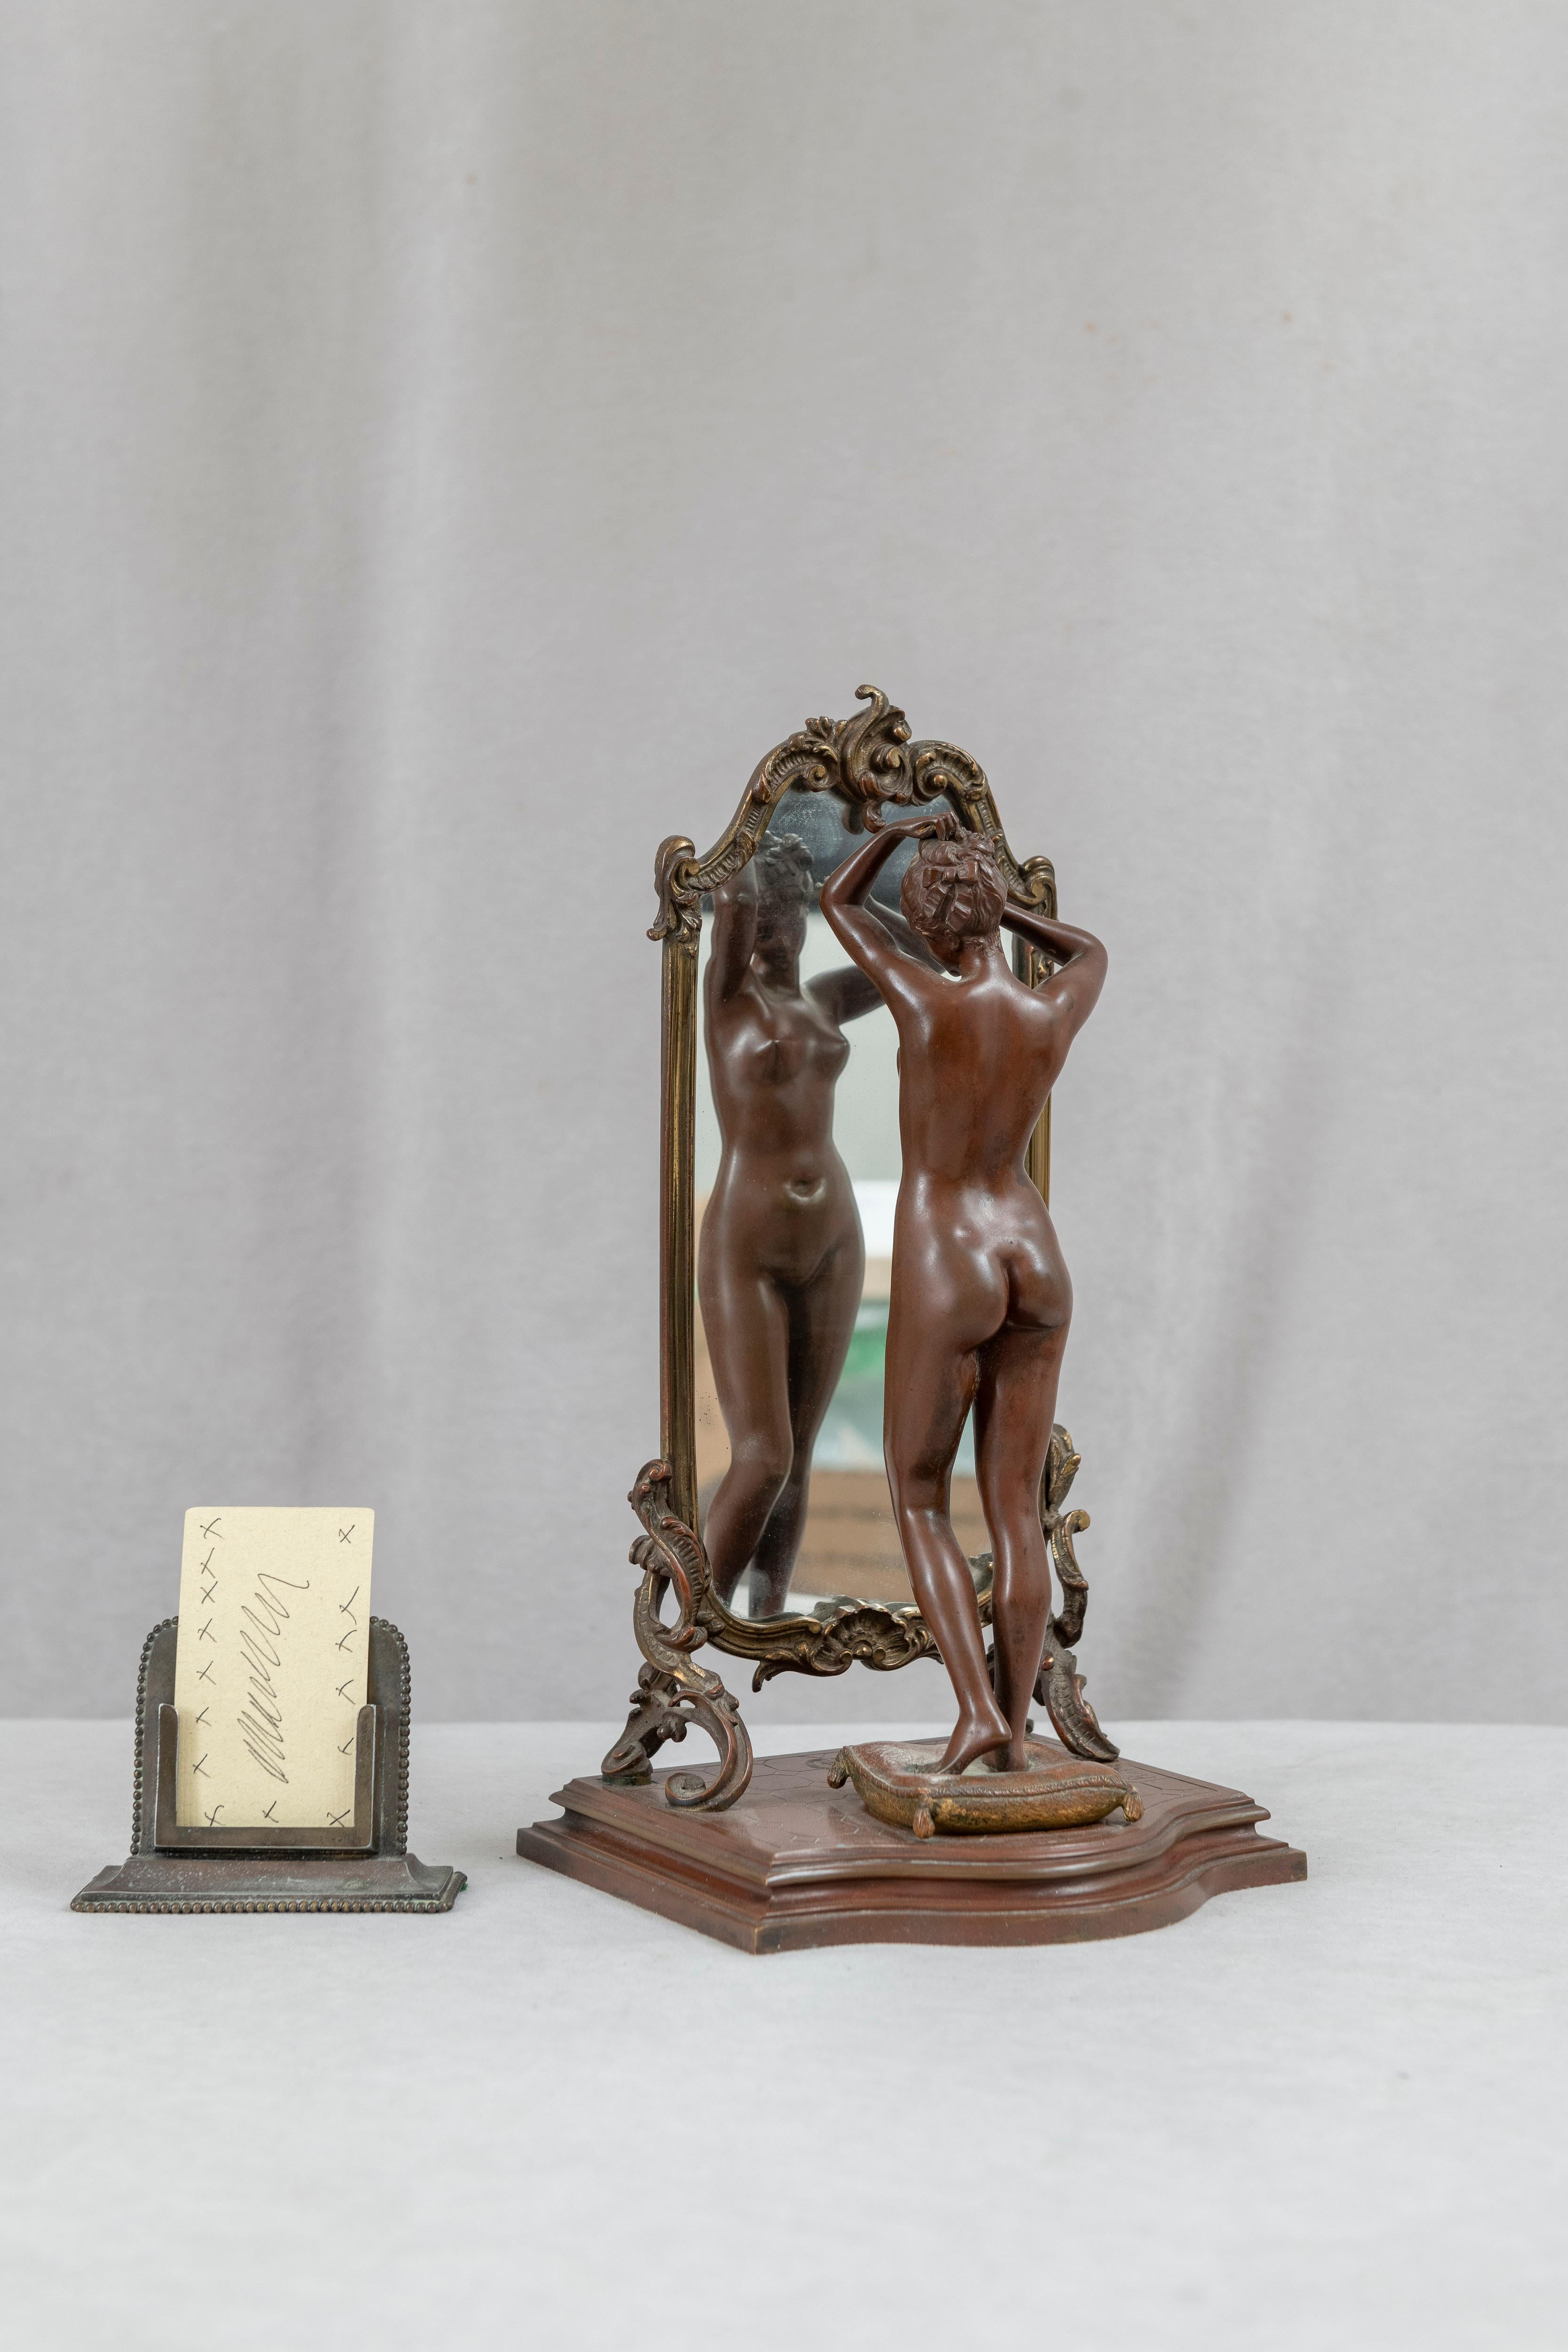 Ce bronze a tous les ingrédients nécessaires pour être très spécial. Le sujet est une beauté sexy et nue se regardant dans un miroir de Cheval.  La patine, le moulage détaillé et l'état remarquable sont tous présents. La jeune femme nue est d'une